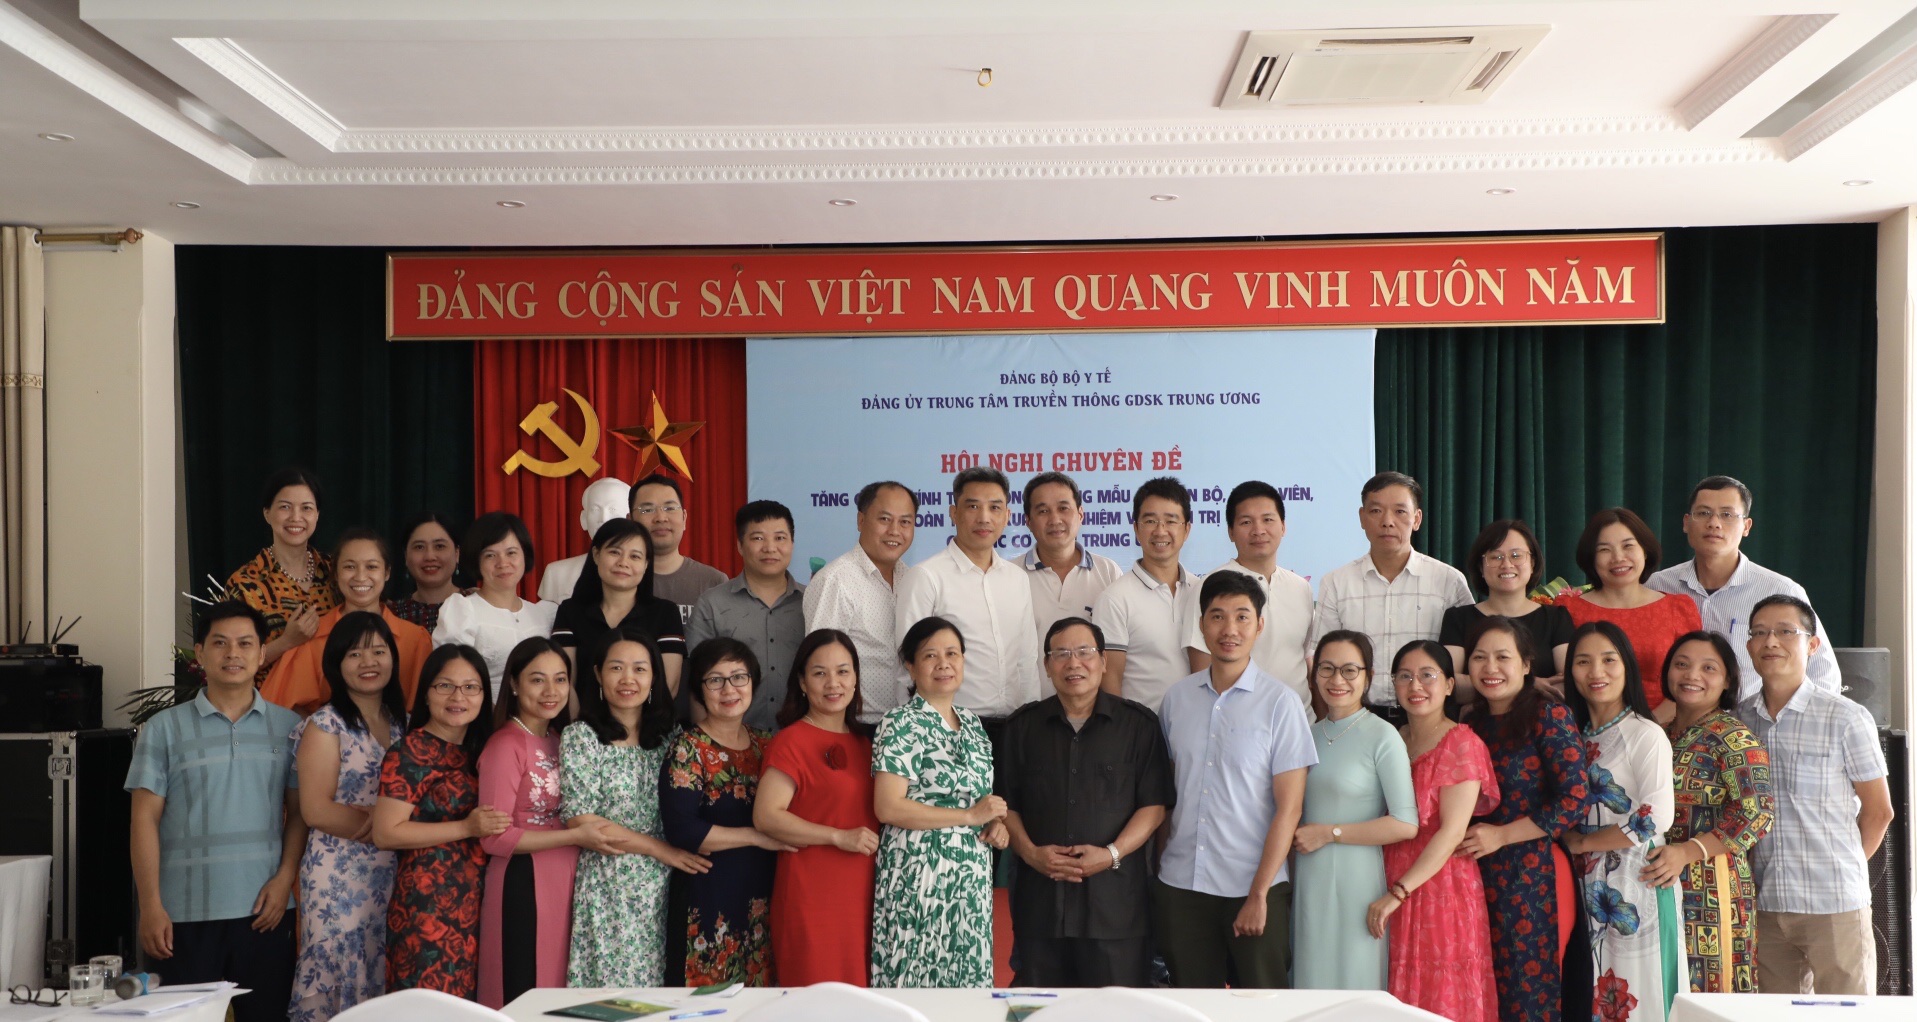 Đảng uỷ Trung tâm Truyền thông GDSK Trung ương tổ chức Hội nghị chuyên đề học tập và làm theo tư tưởng, đạo đức, phong cách Hồ Chí Minh